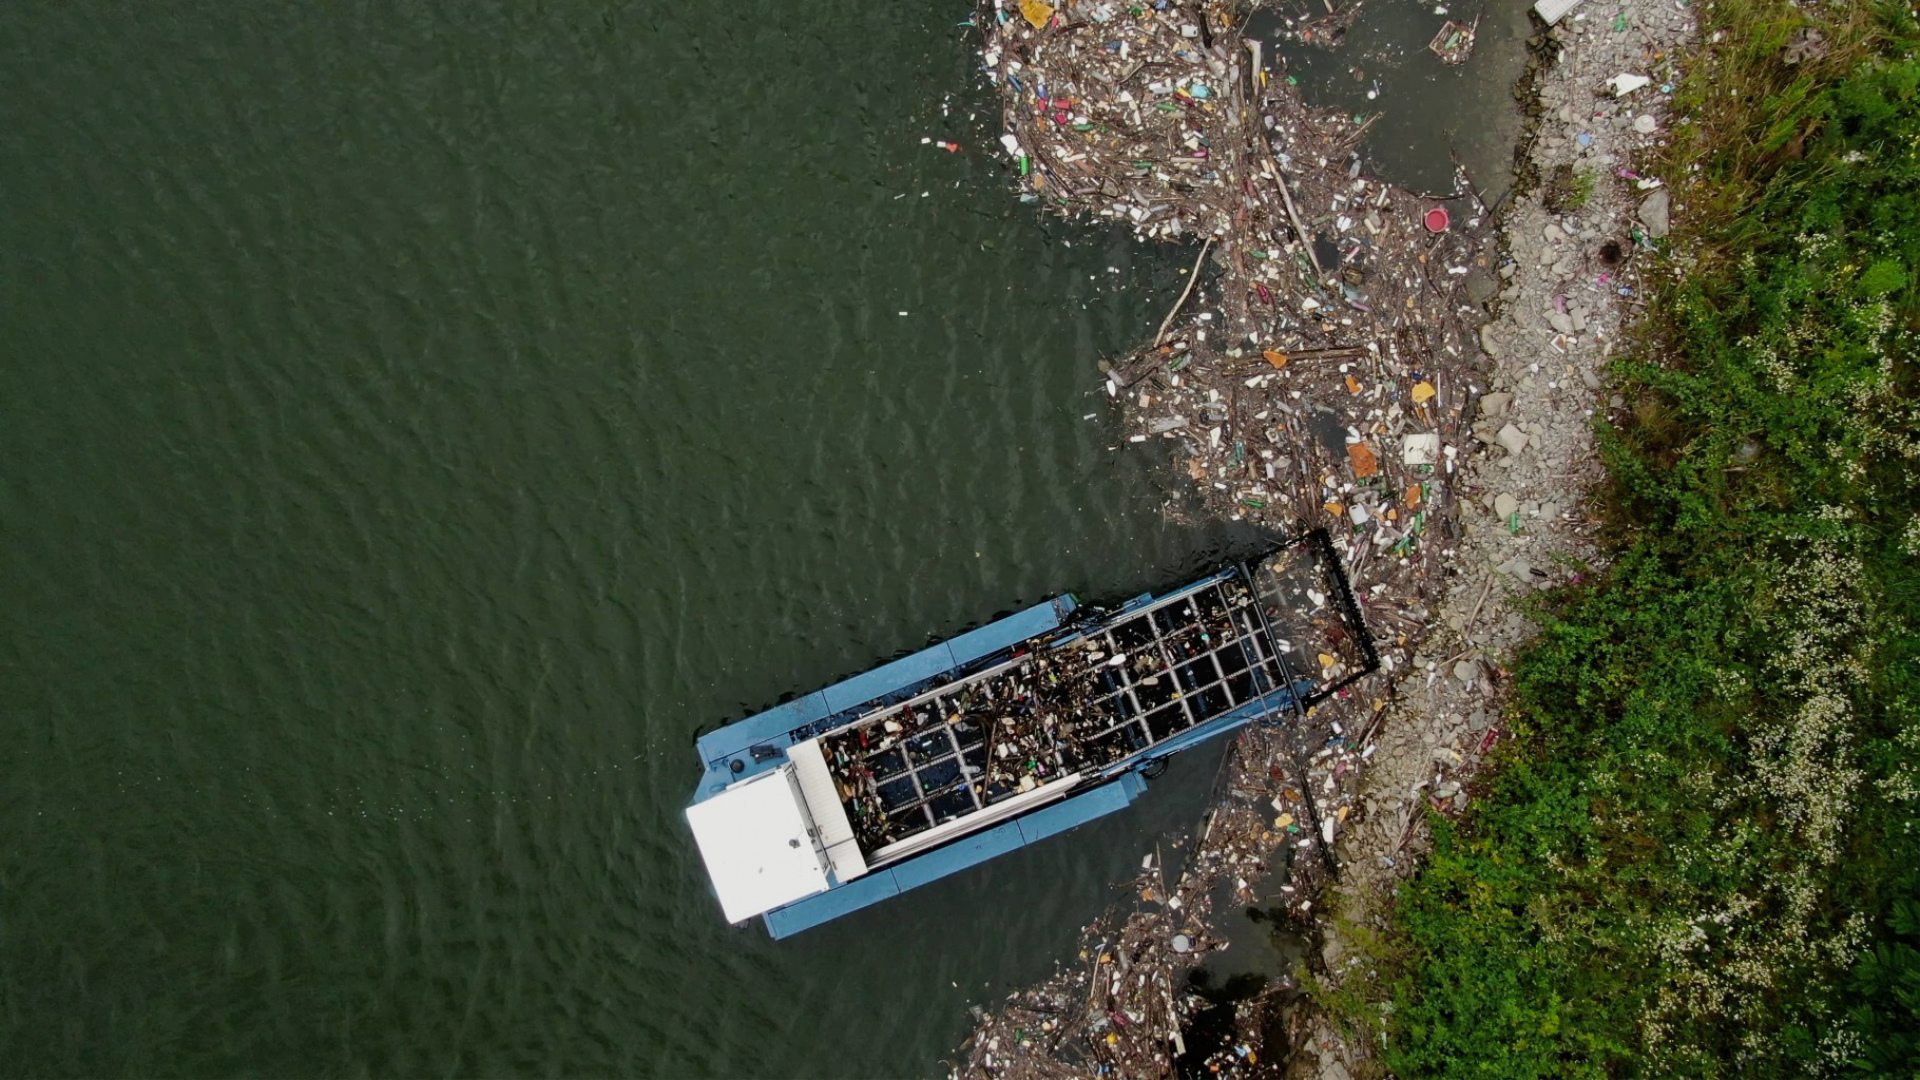 Gemeinsam im Einsatz gegen Plastikmüll in Thailands Flüssen